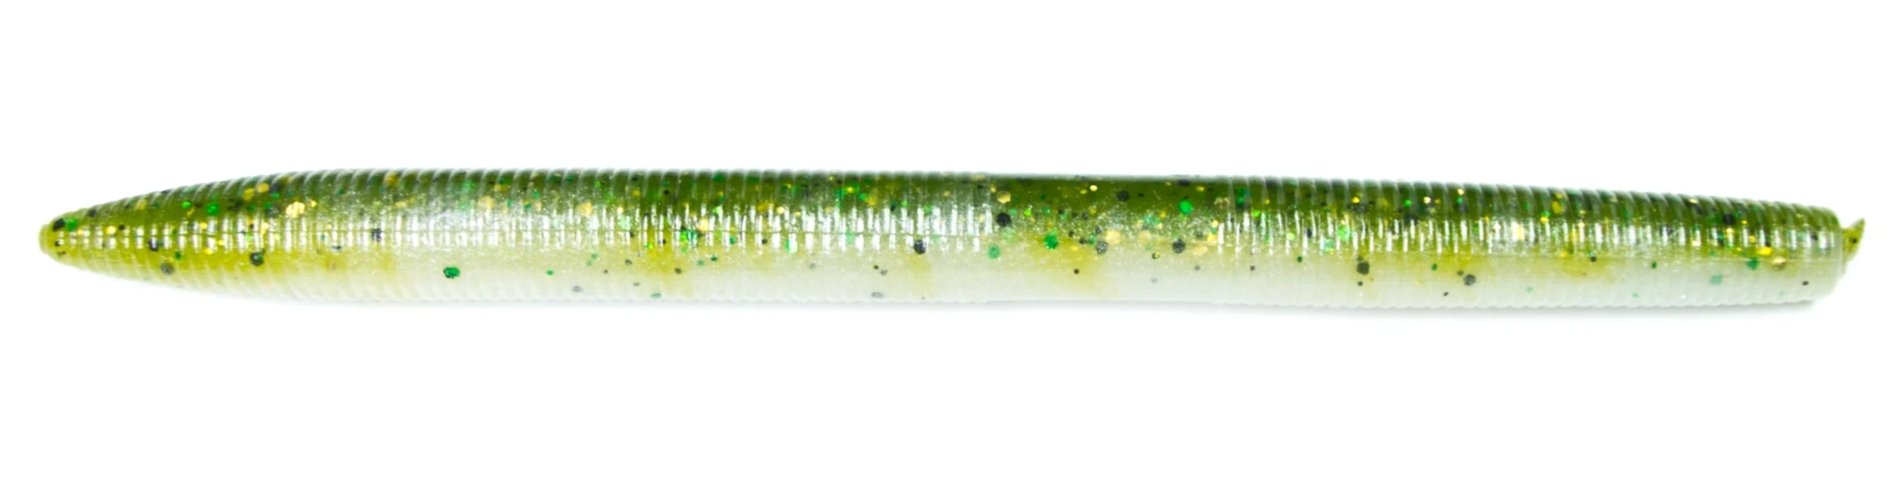 Gary Yamamoto Senko Soft Plastic Worm Stick Bait Bass Fishing Lure 5in 10pk